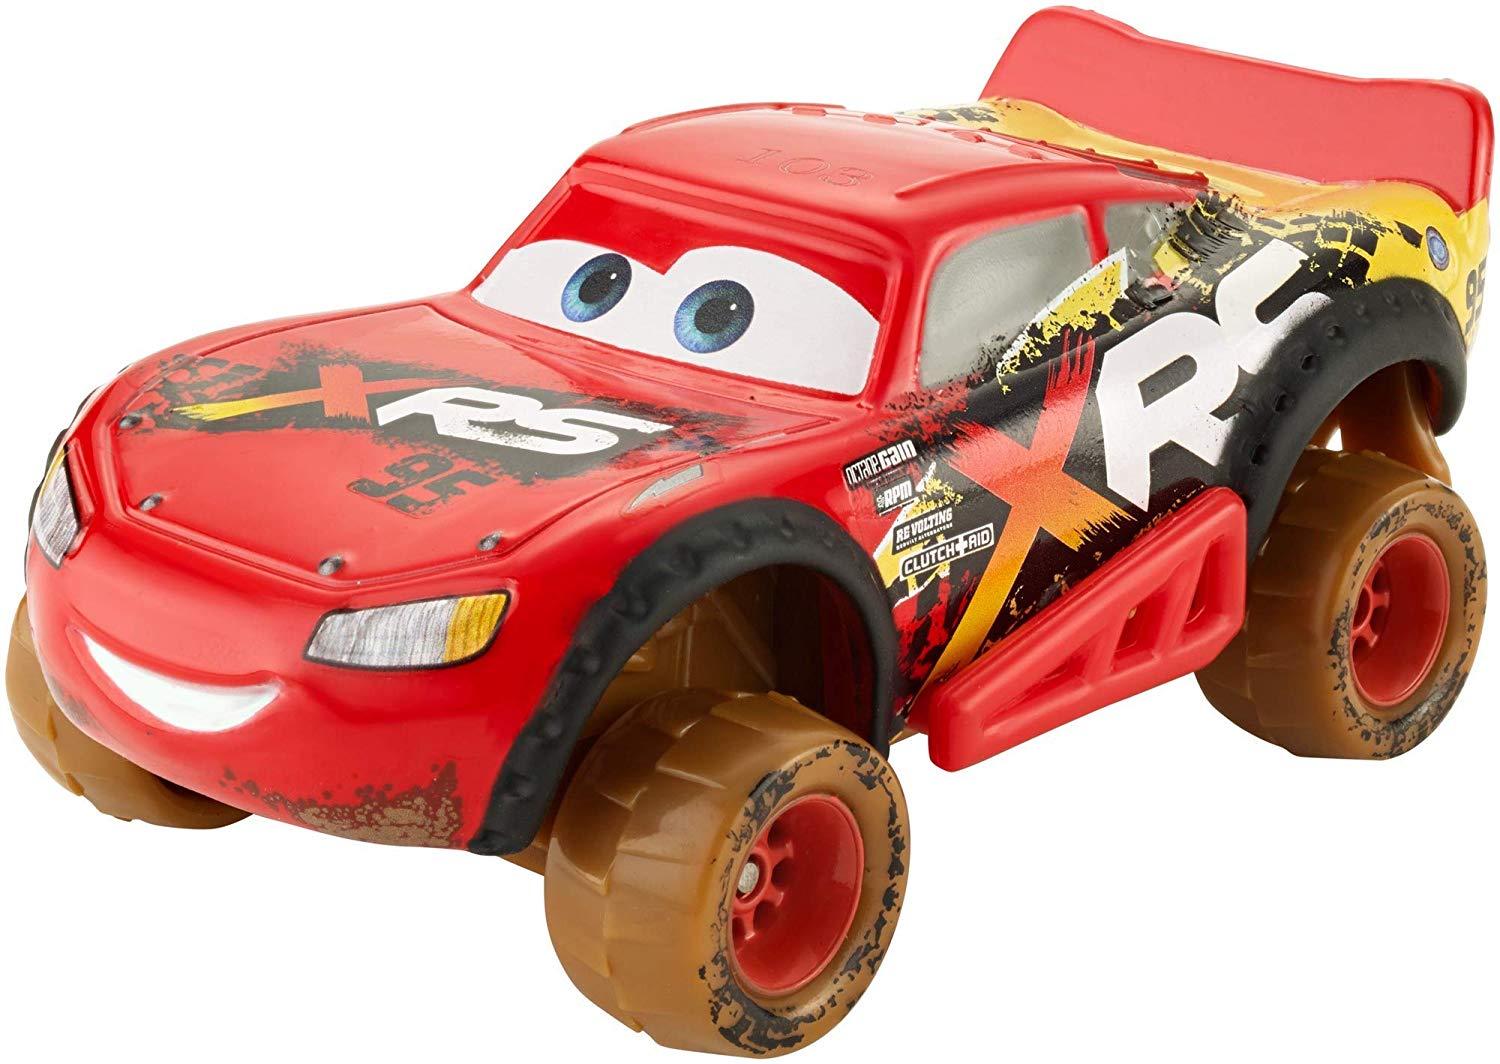 Игрушка Тачки 3: Молния Маккуин (Disney Pixar Cars XRS Mud Lightning McQueen)